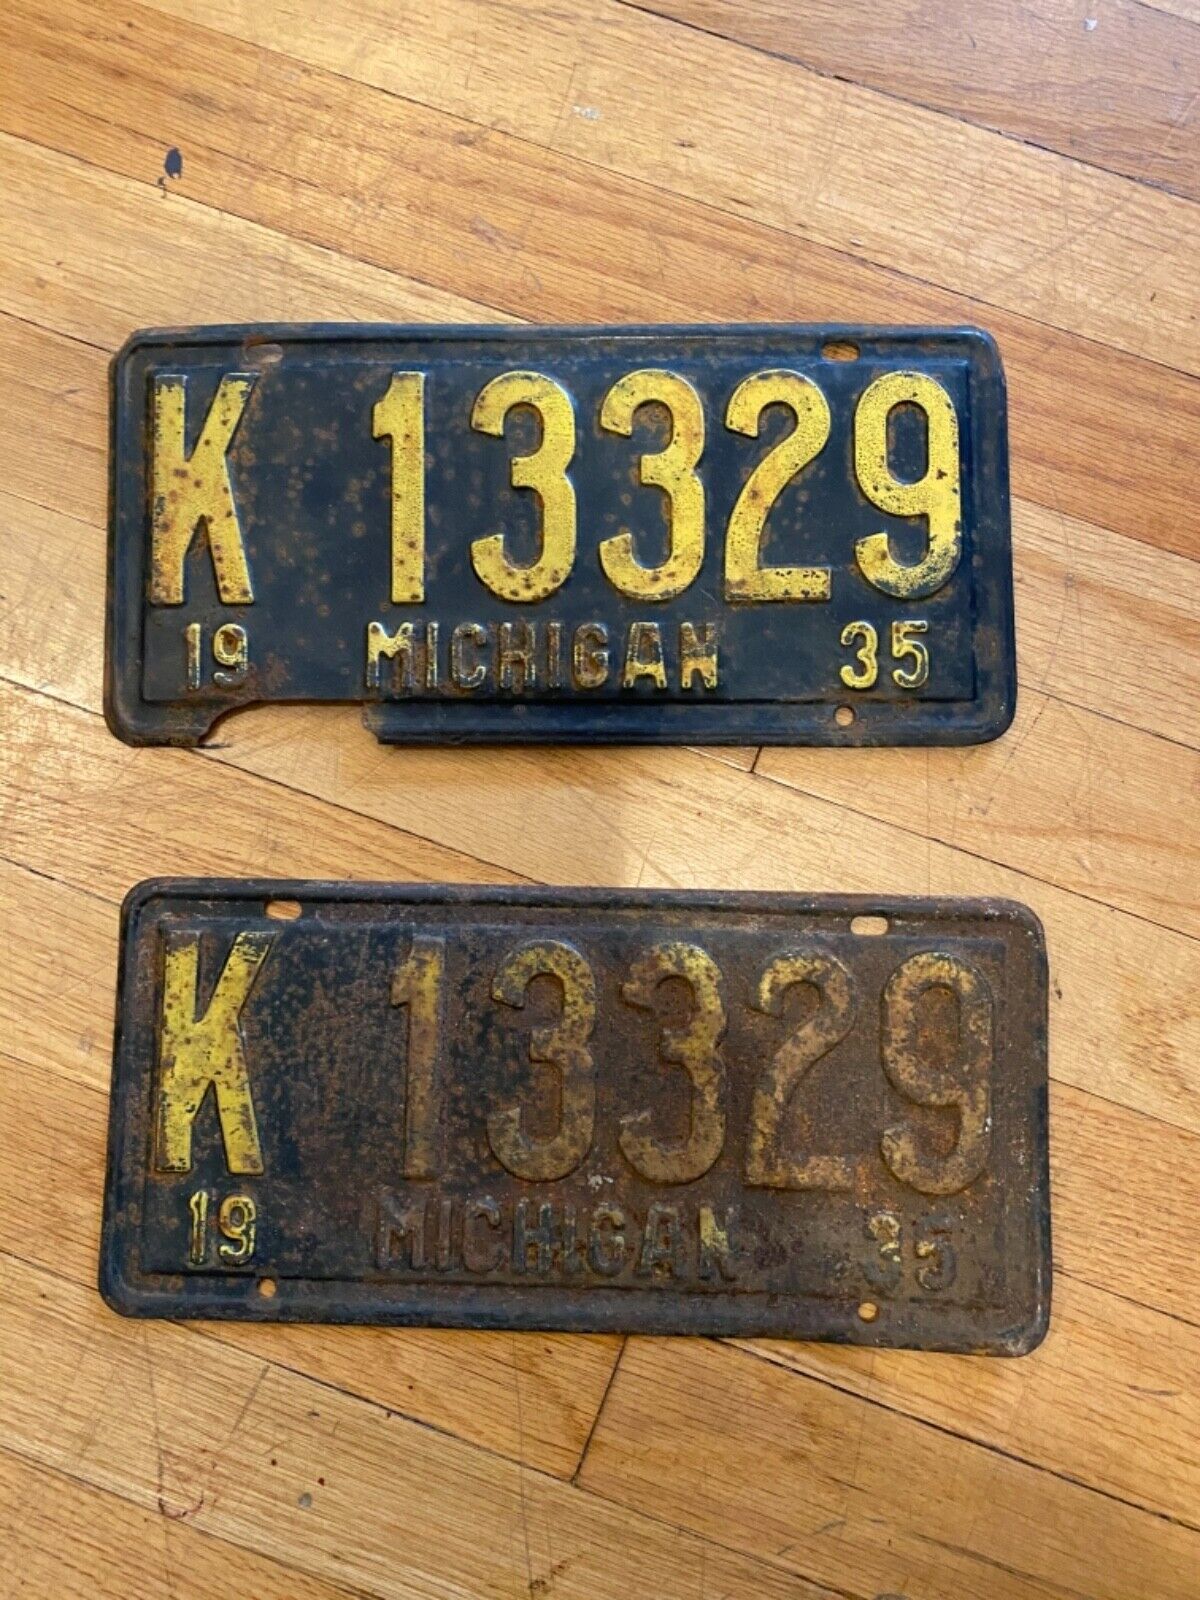 1935 Michigan  License plates Matching pair #K 13329